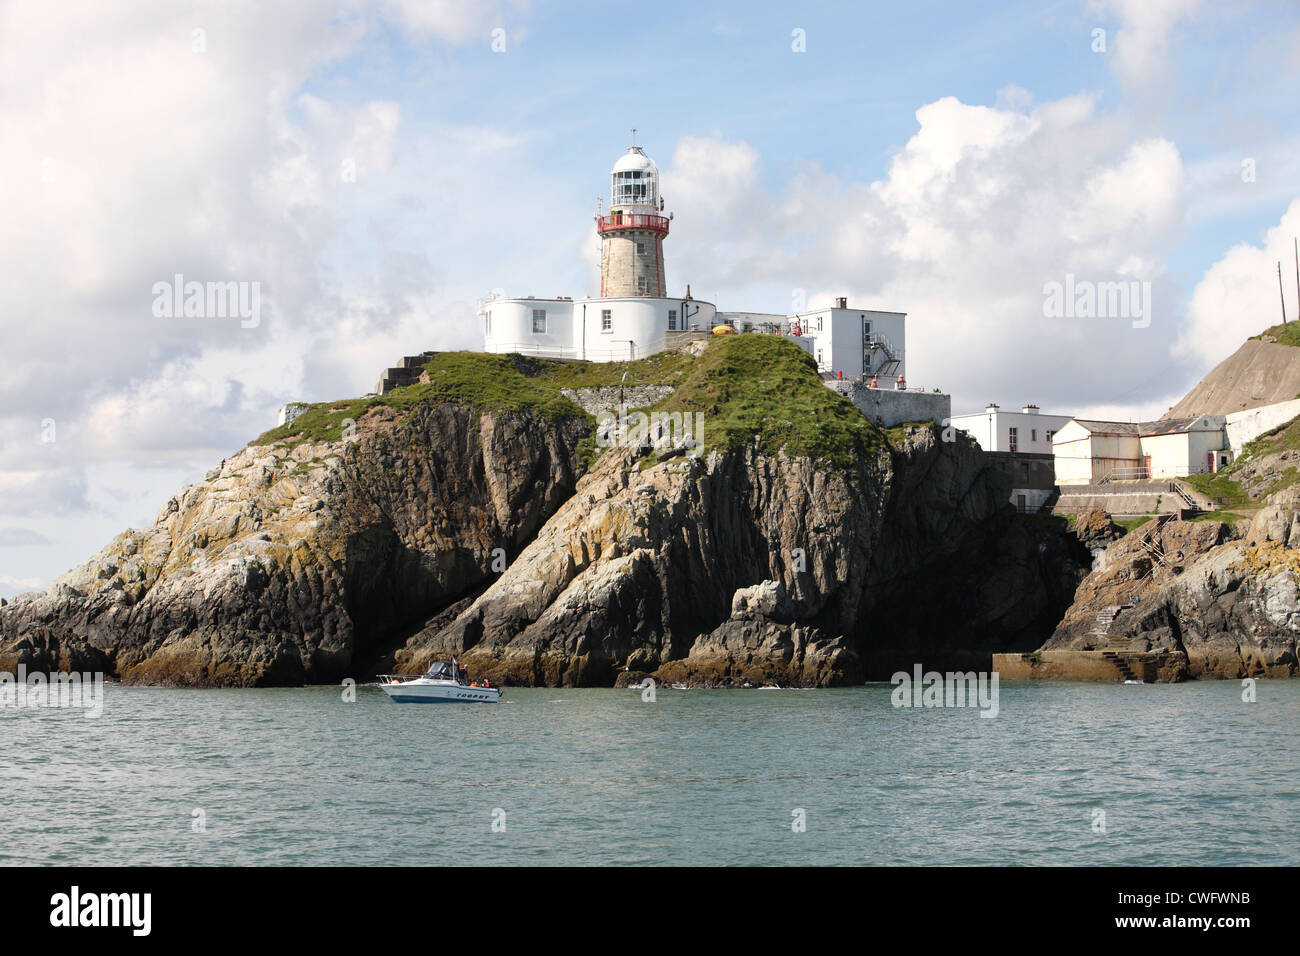 Baily lighthouse at Howth Head, Dublin Bay Ireland Stock Photo